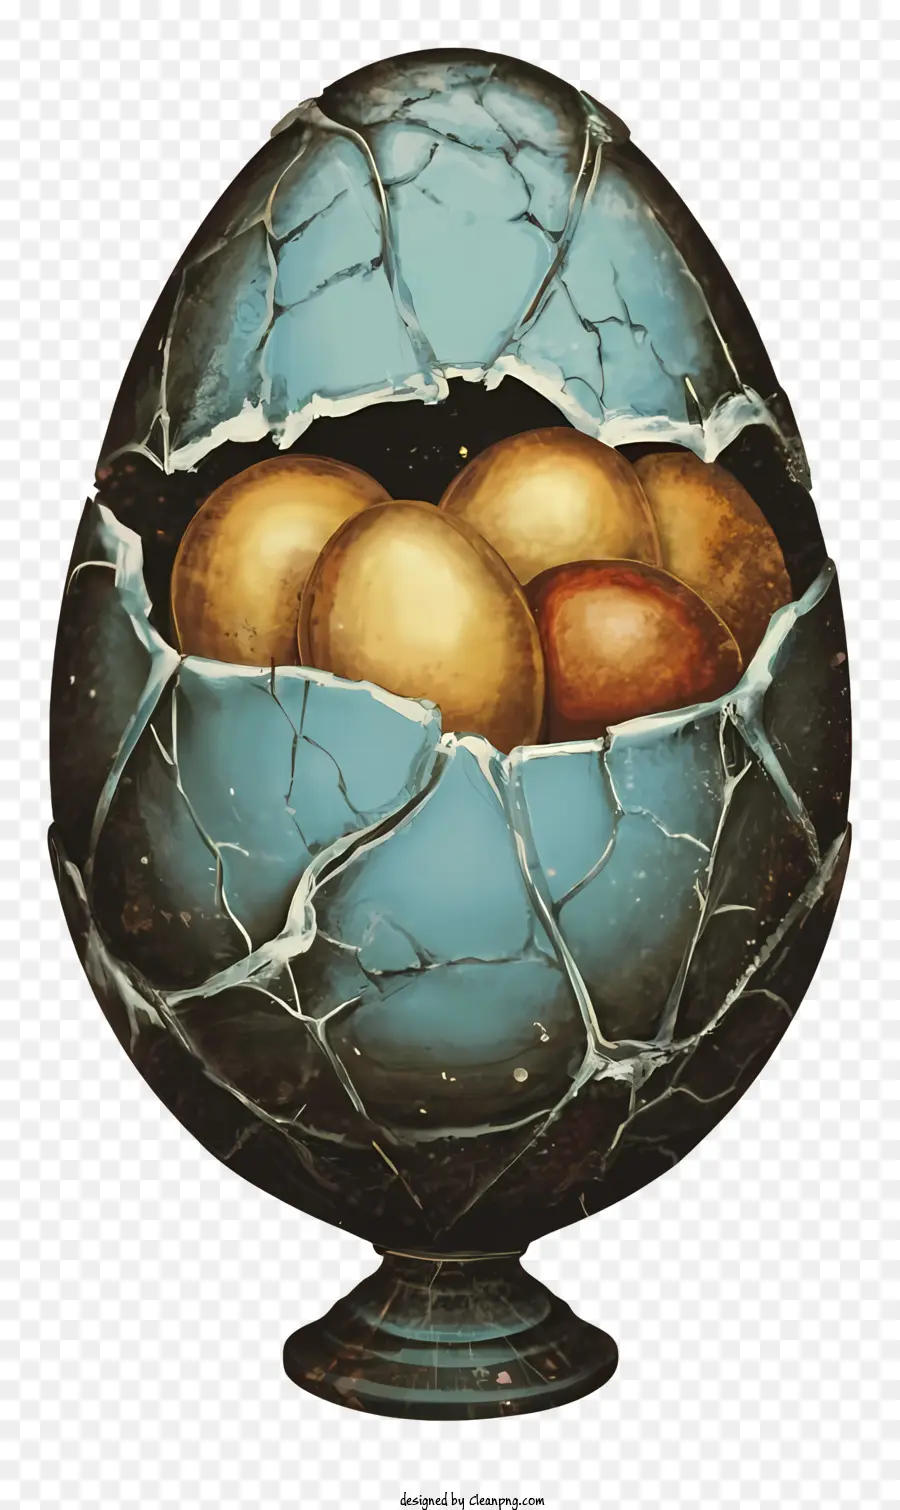 gebrochene Eier rissen Eierschalen gelbe Eier braune Eier exponierte Eigelb - Rissen Eierschale mit gelbem und braunem Eigelb